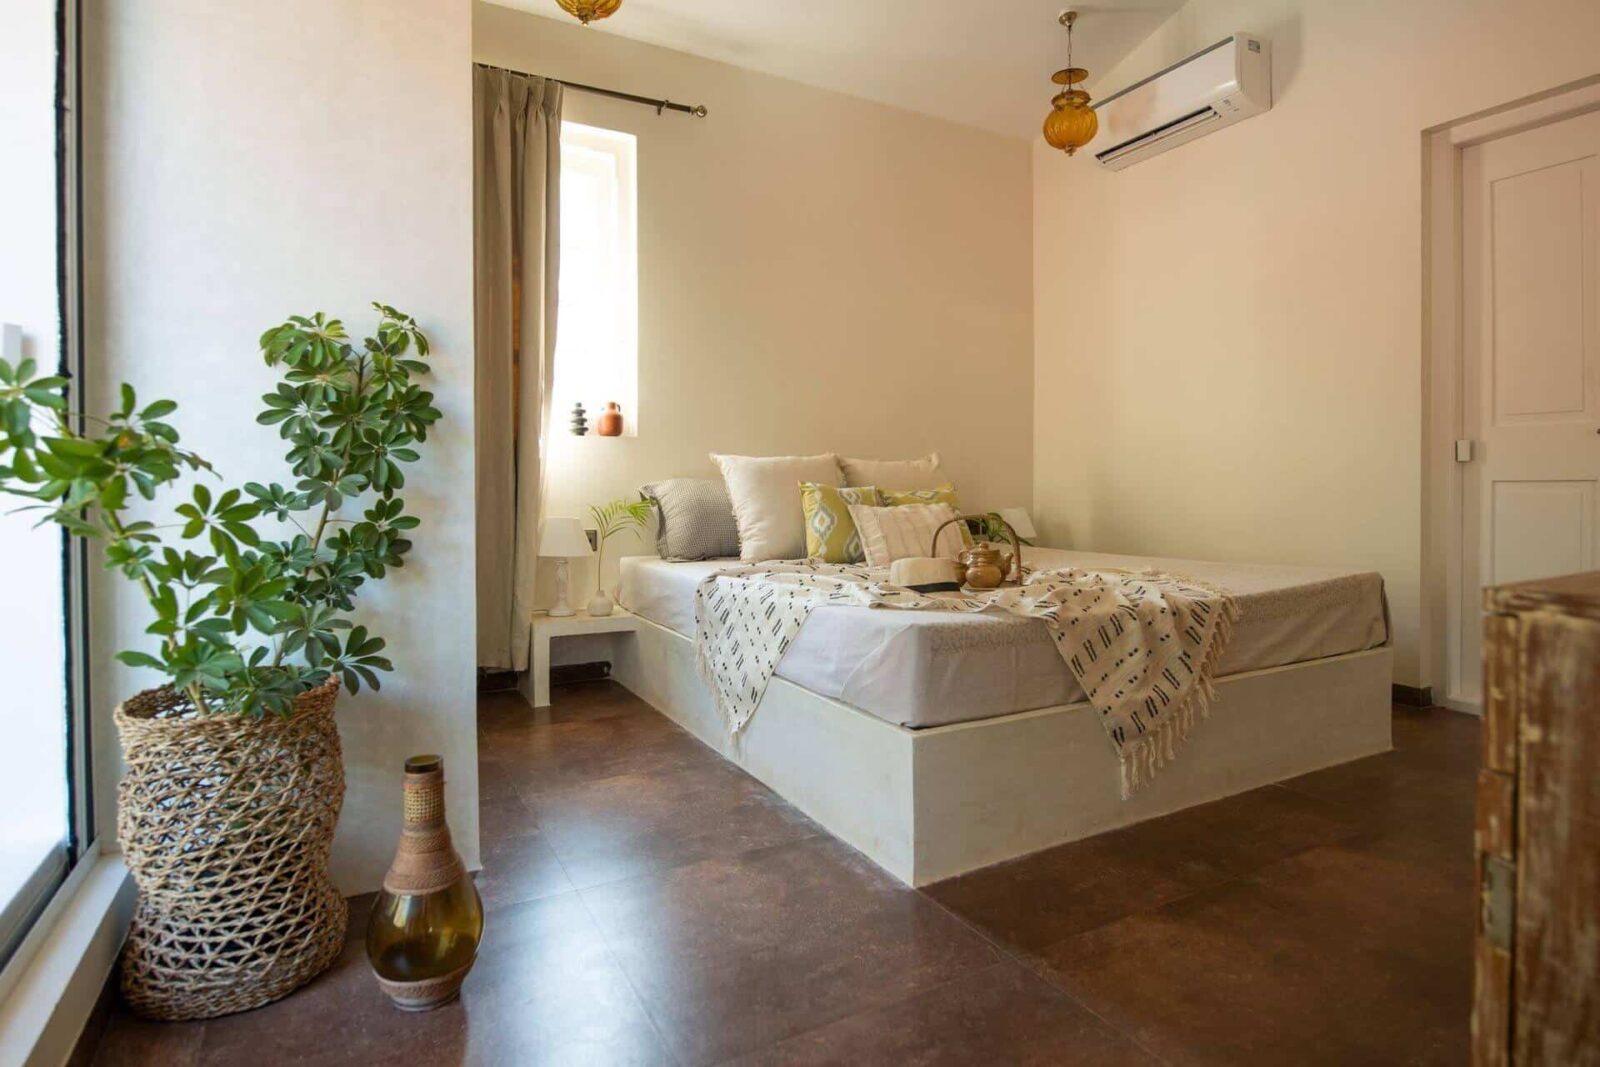 Colina Vaddo H - Buy Villas in North Goa - Cosy Bedroom View